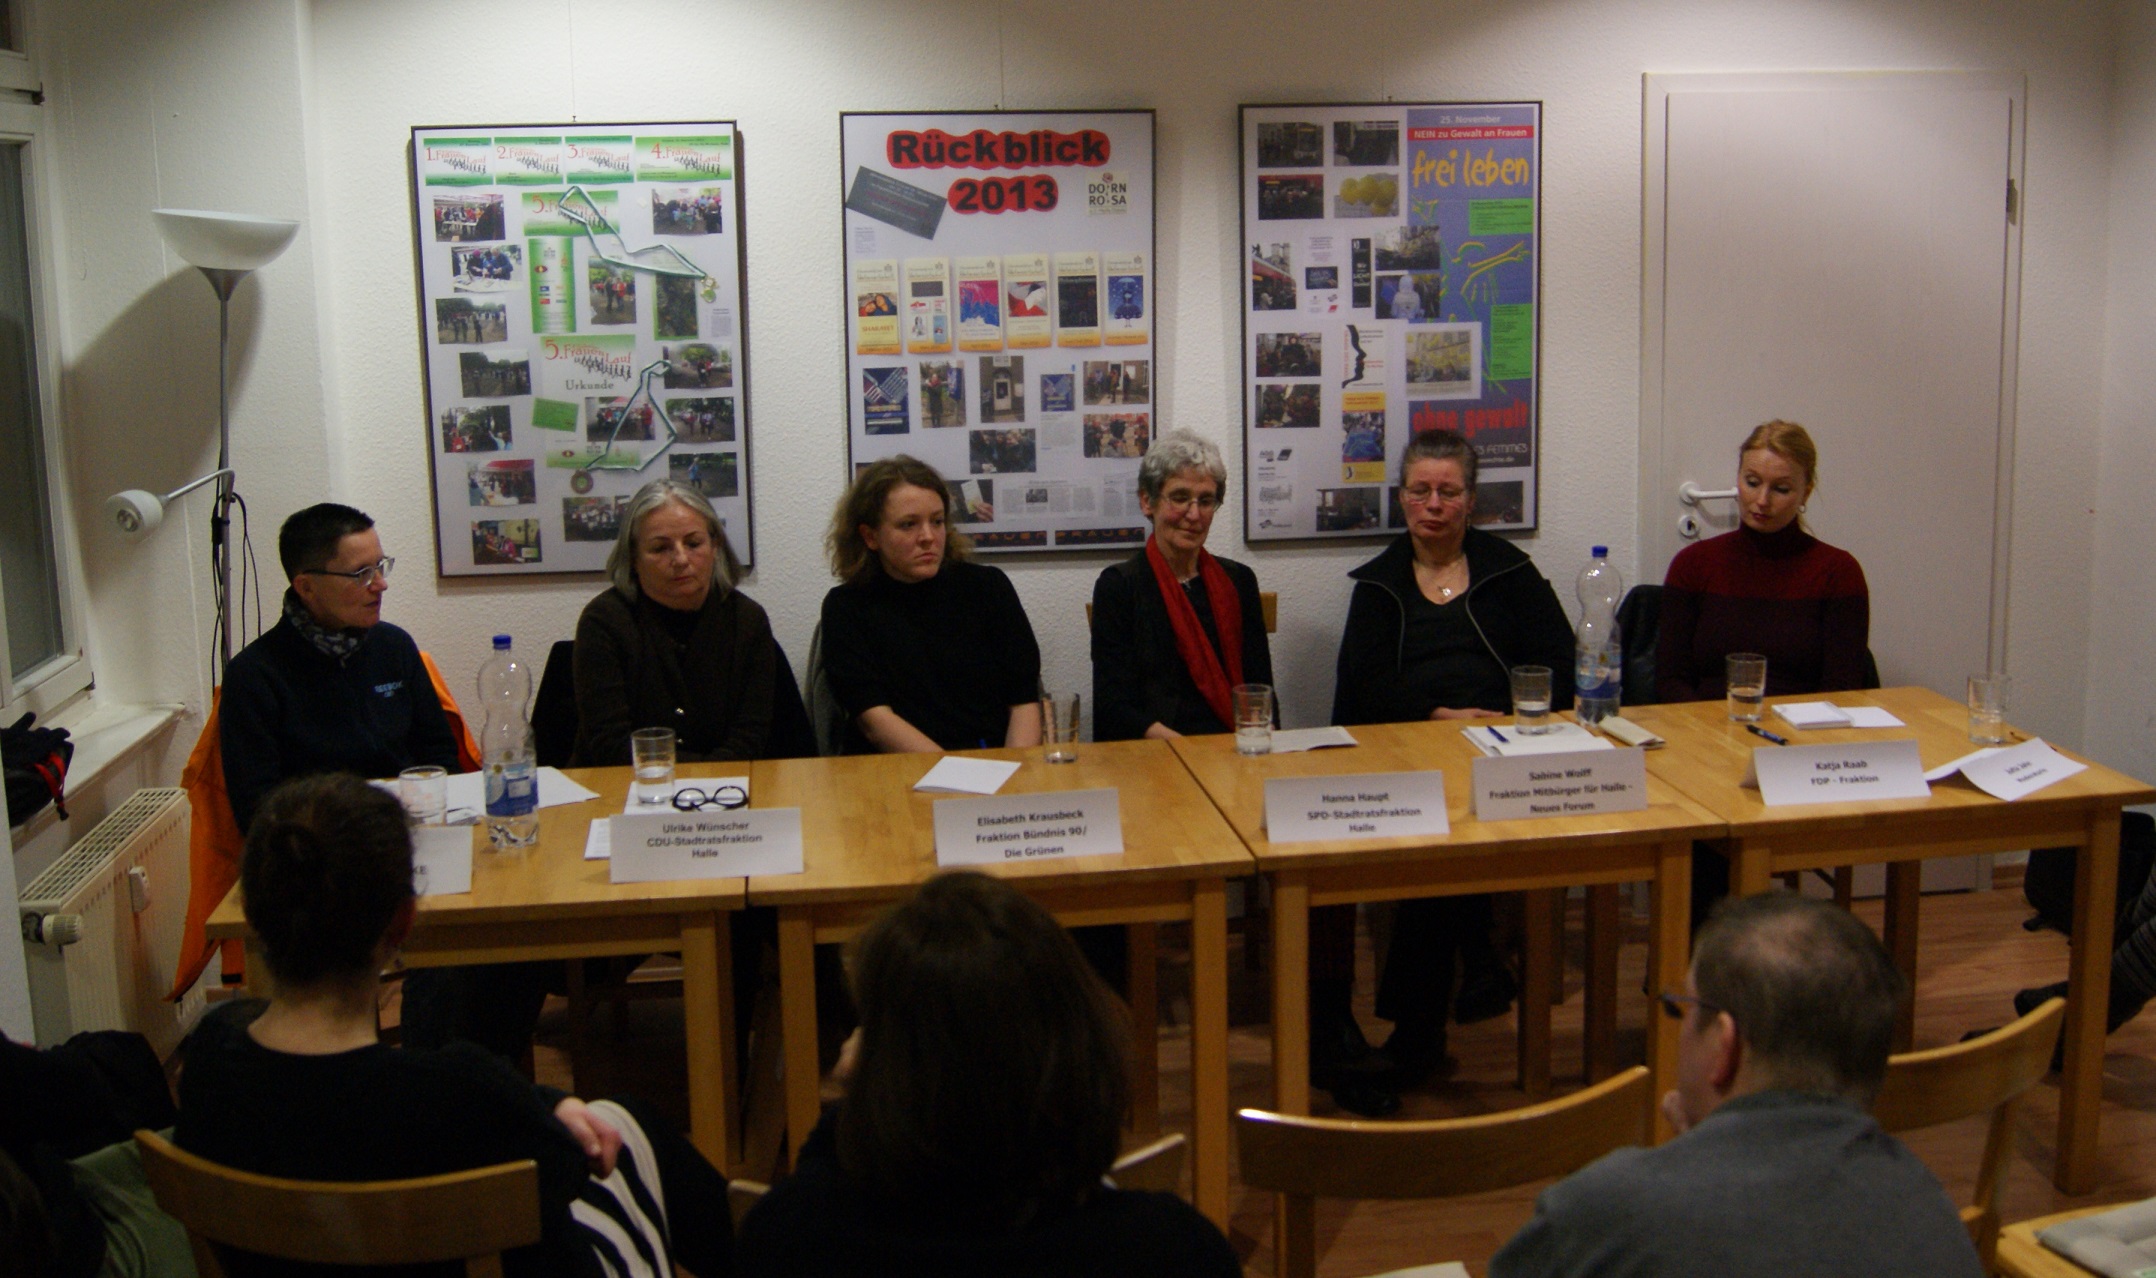 Das Podium: sechs aktive Stadträtinnen aus Halle